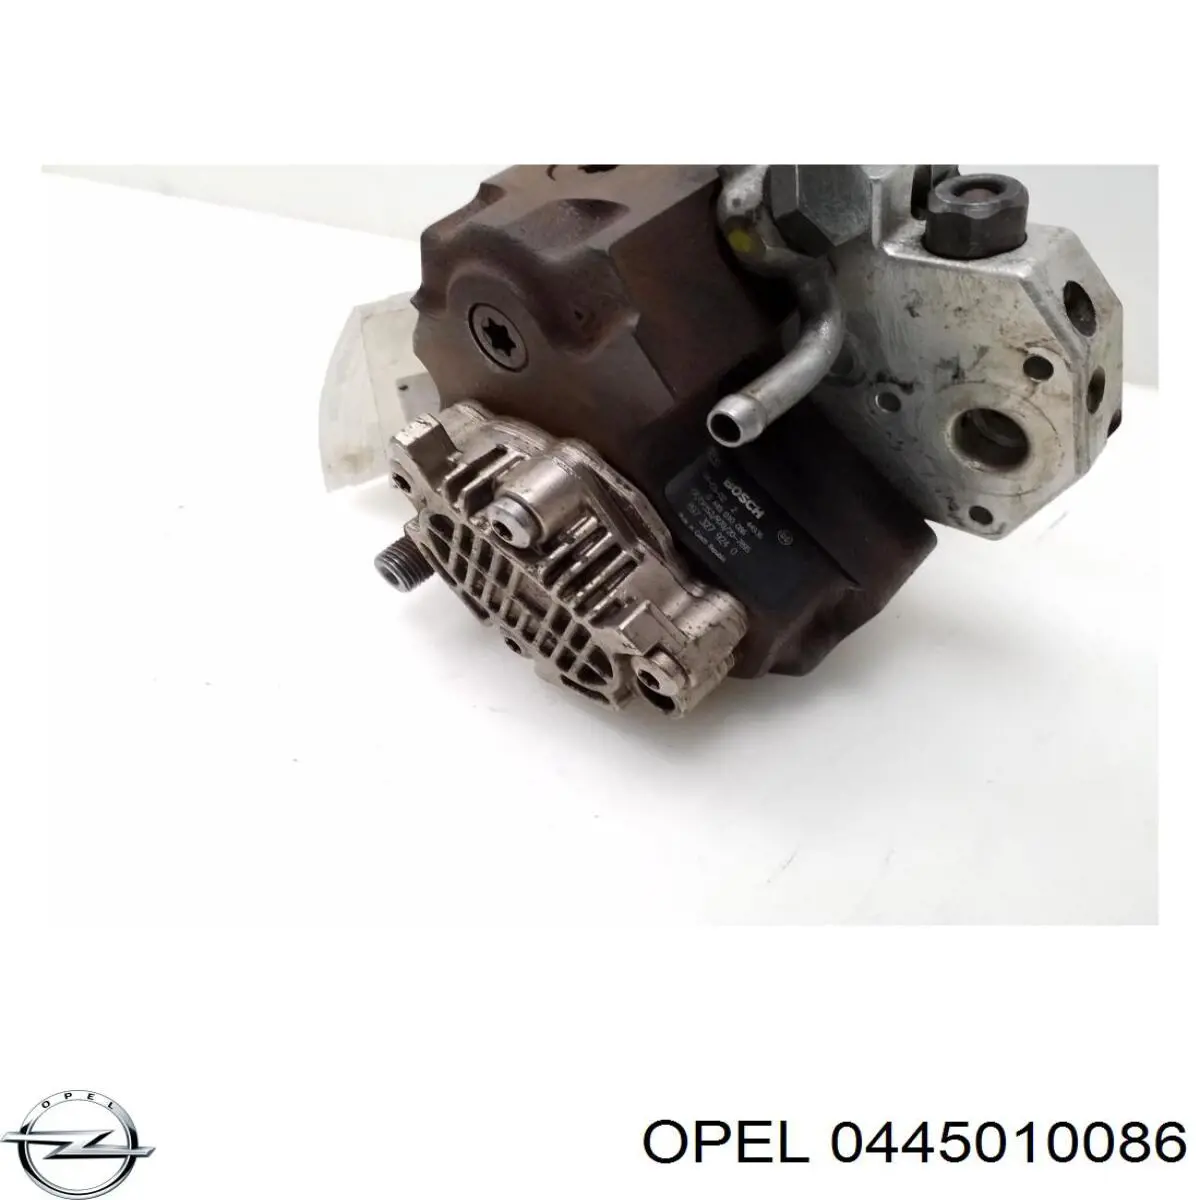 819181 Opel bomba inyectora